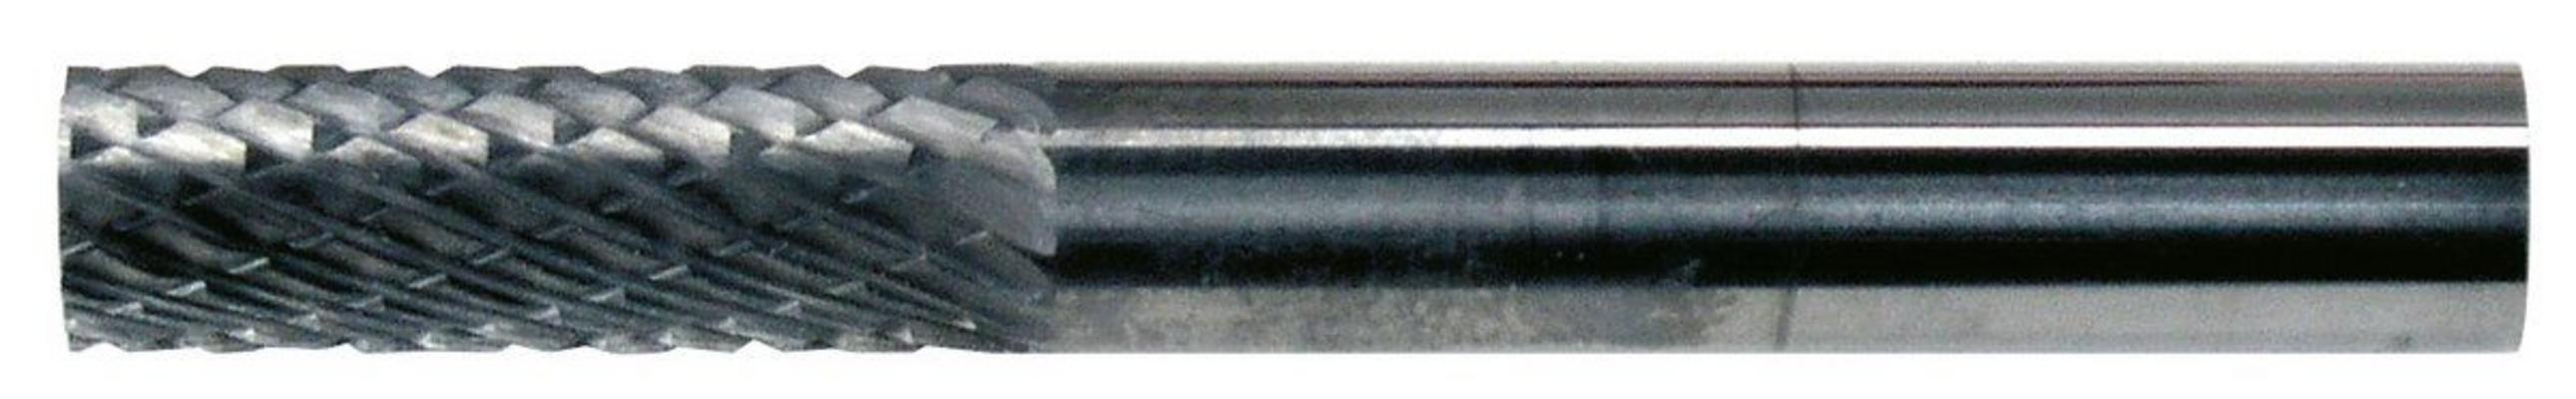 Kovametalliviila, 6 mm sylinteri, Garryson